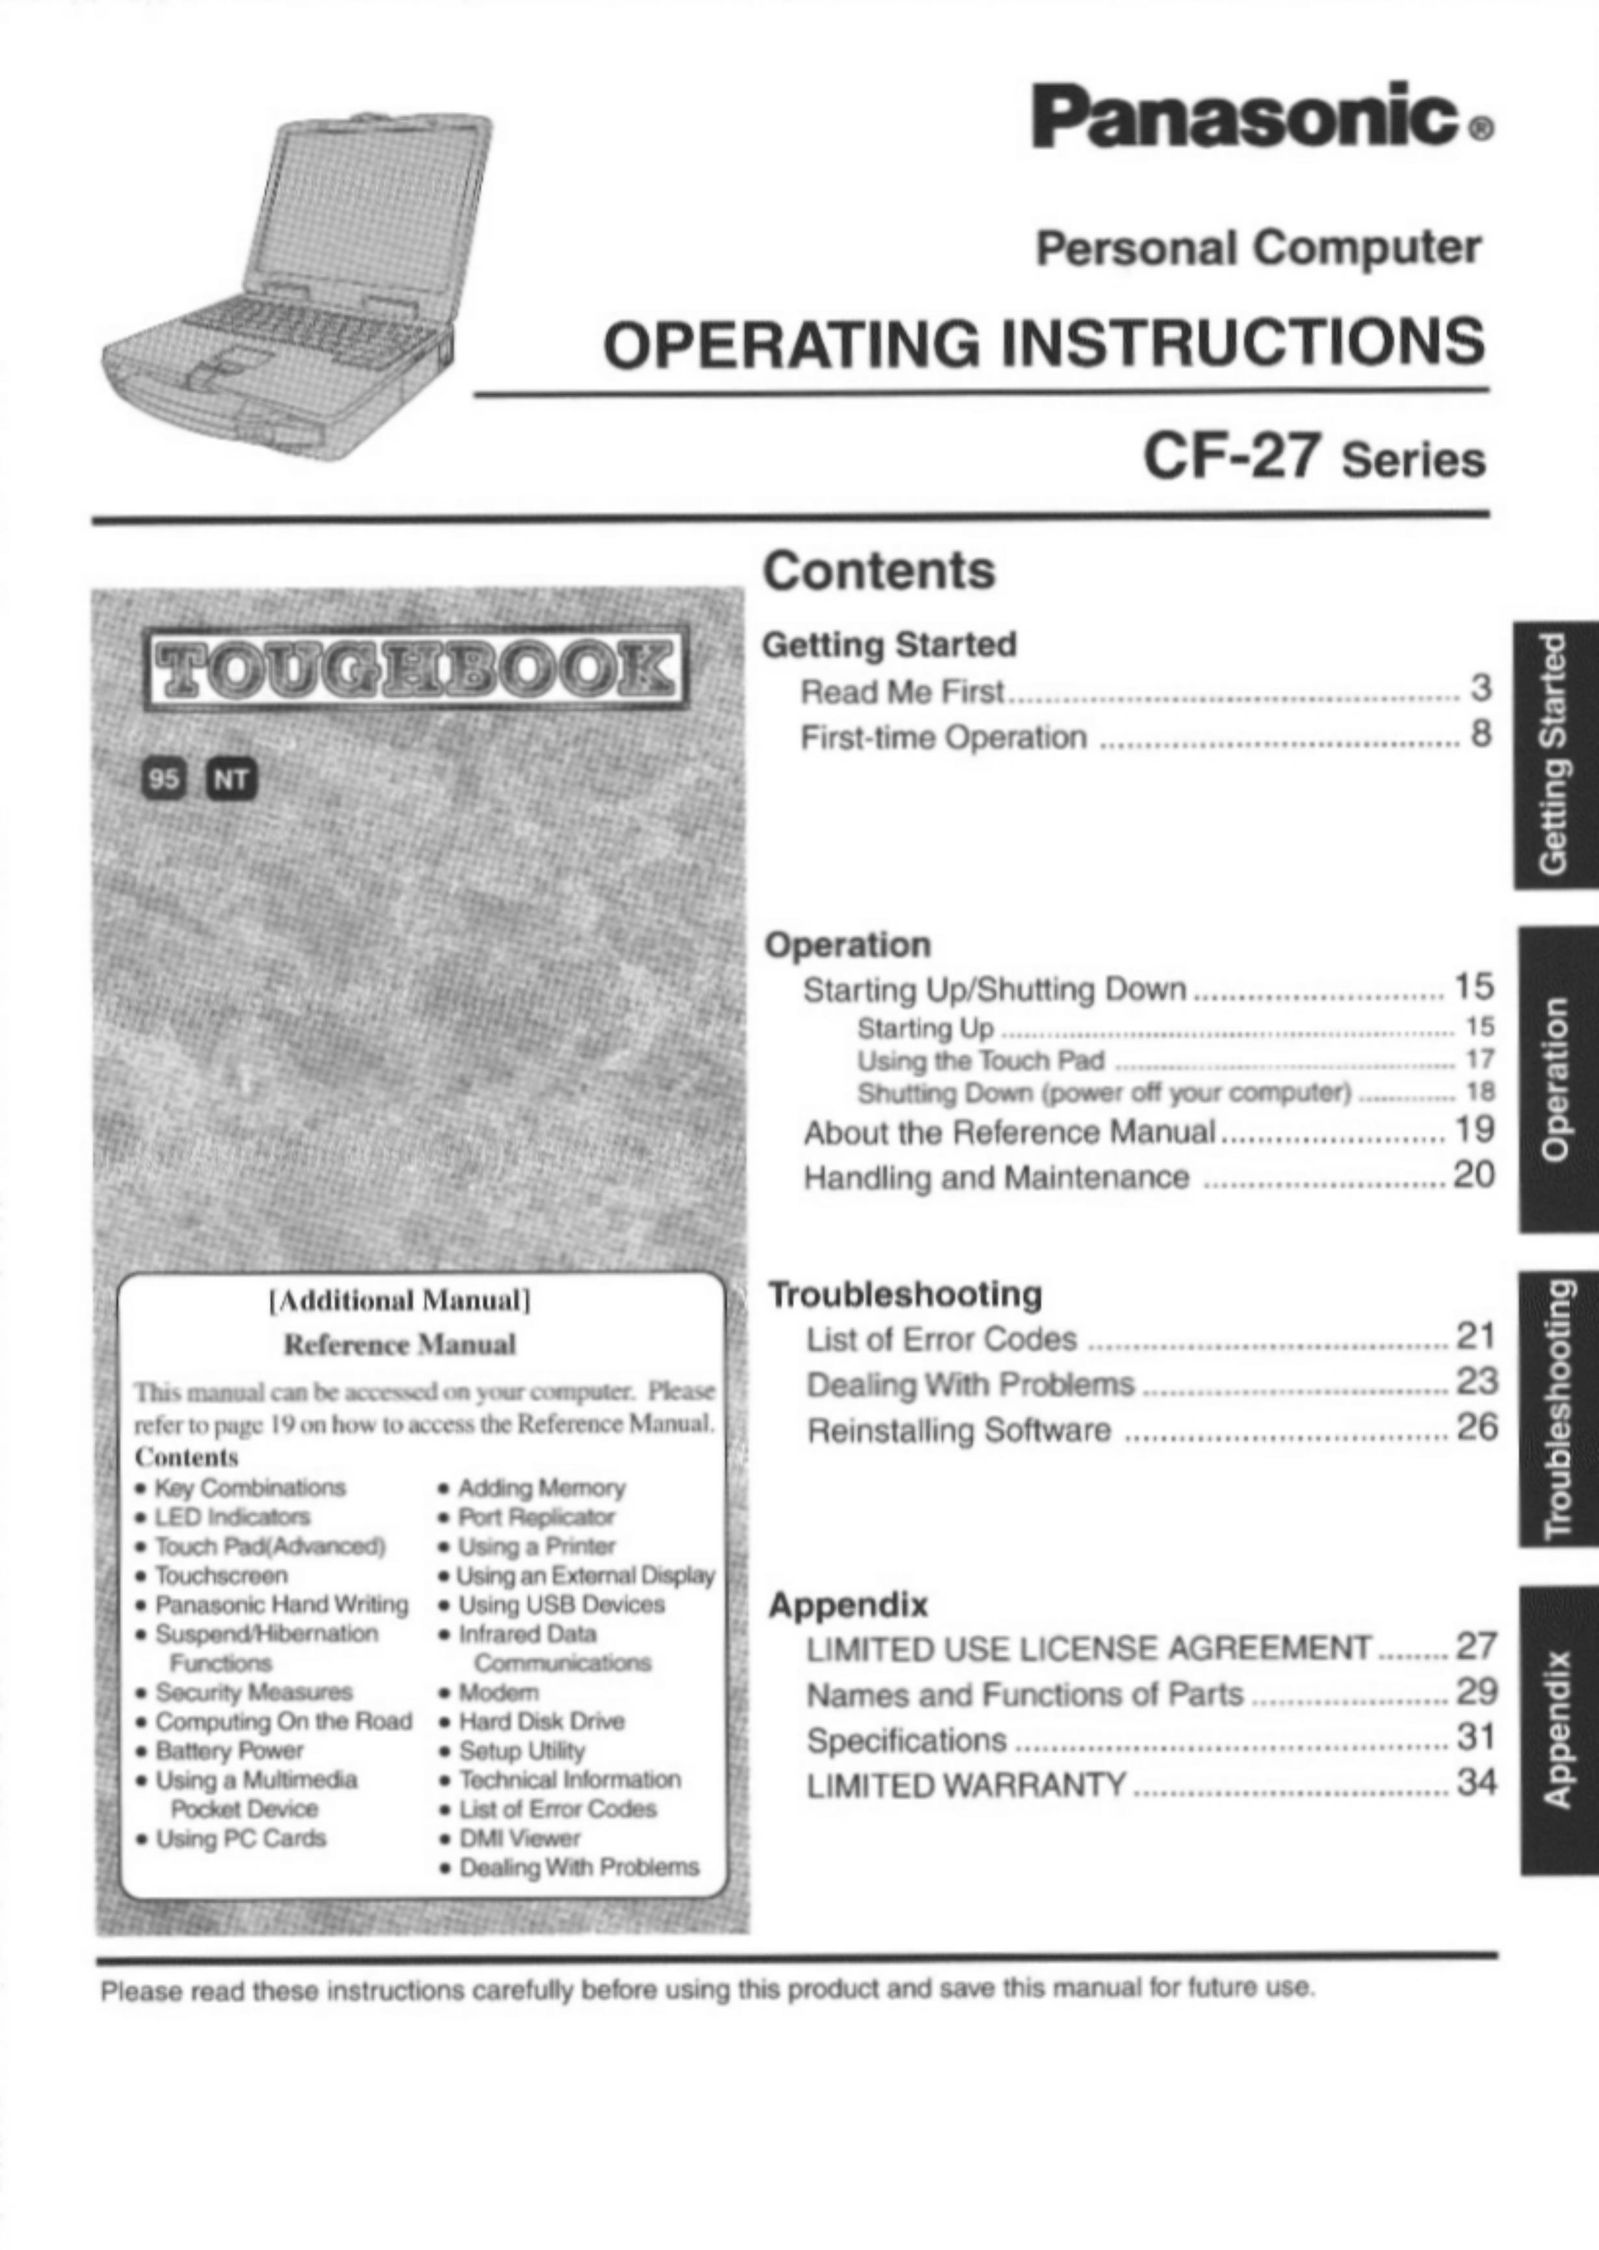 Panasonic CF-27 Personal Computer User Manual